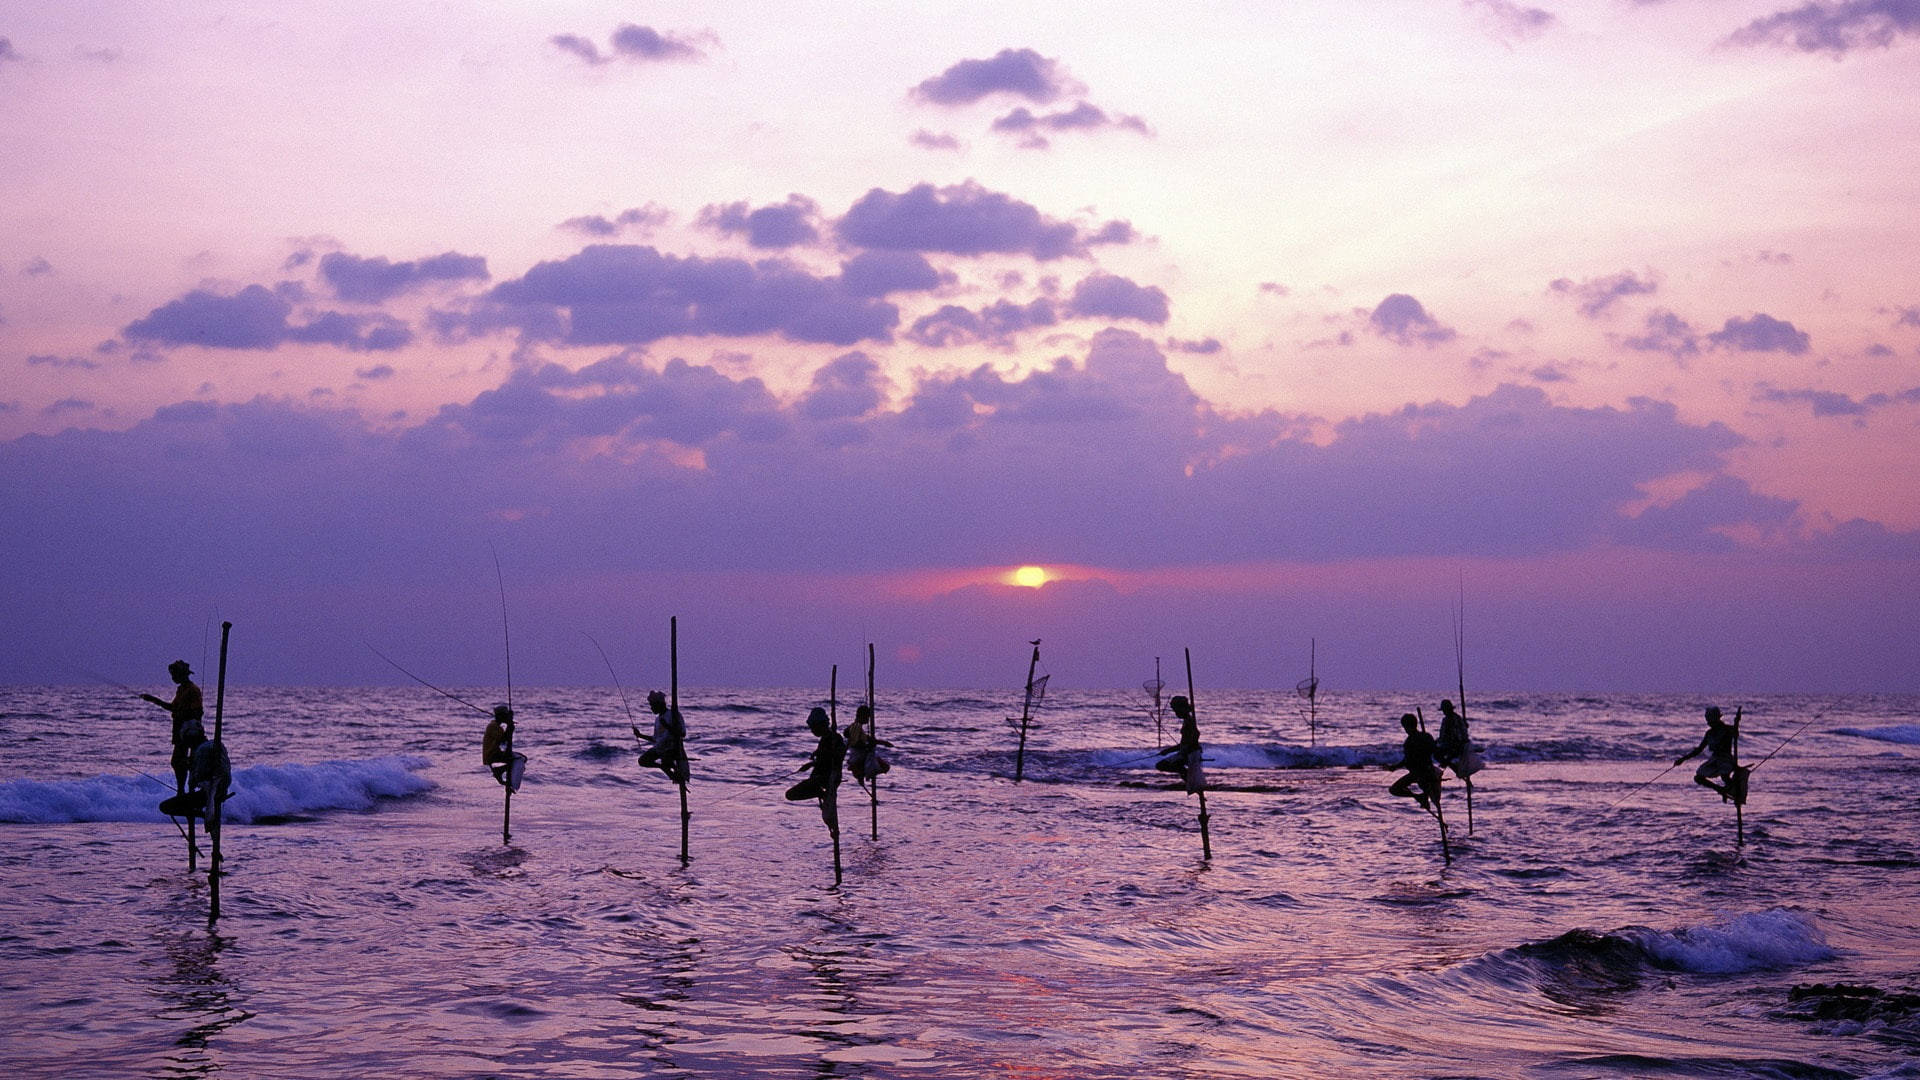 Sri Lanka Stilt Fishing Sunset Background